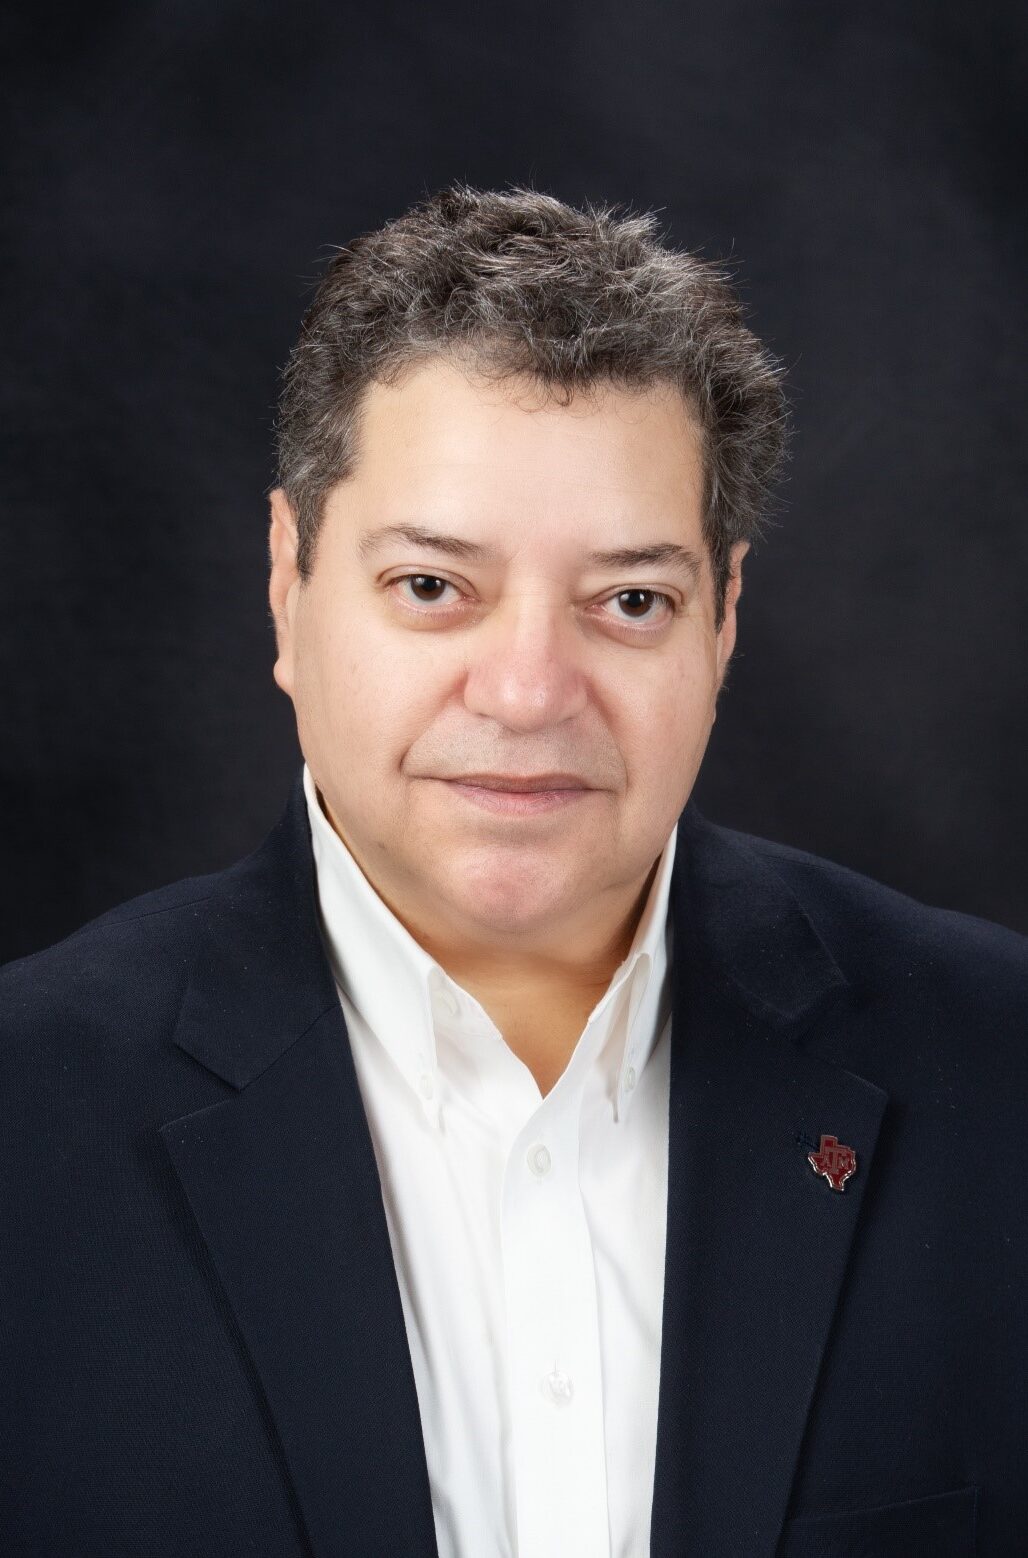 Mario Medina